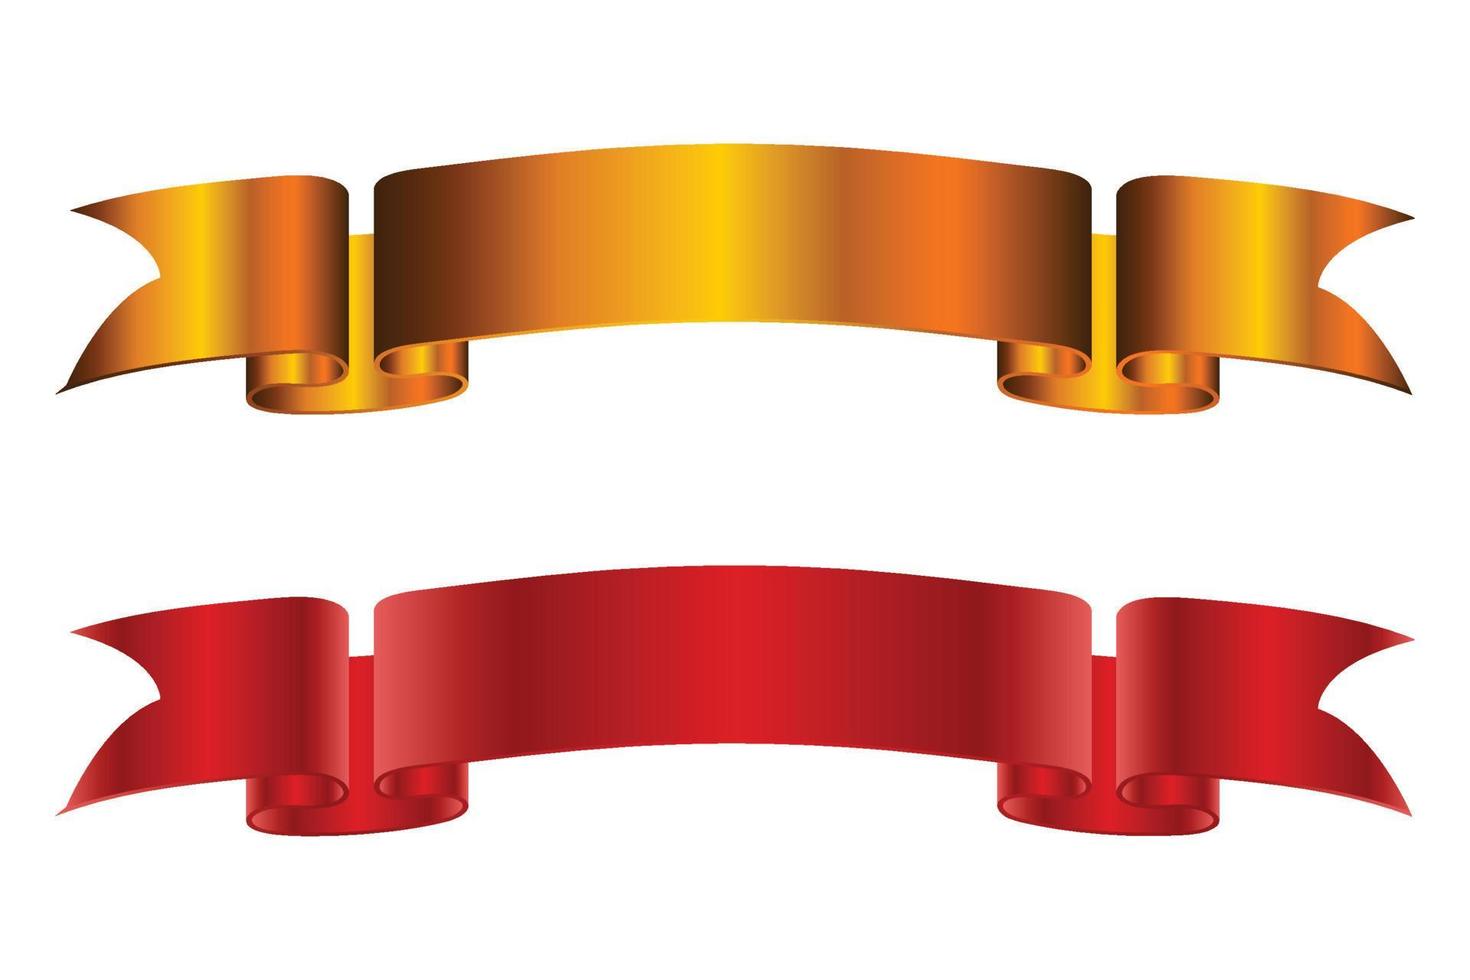 Ilustración de vector de banner de cinta roja y dorada de elegancia.